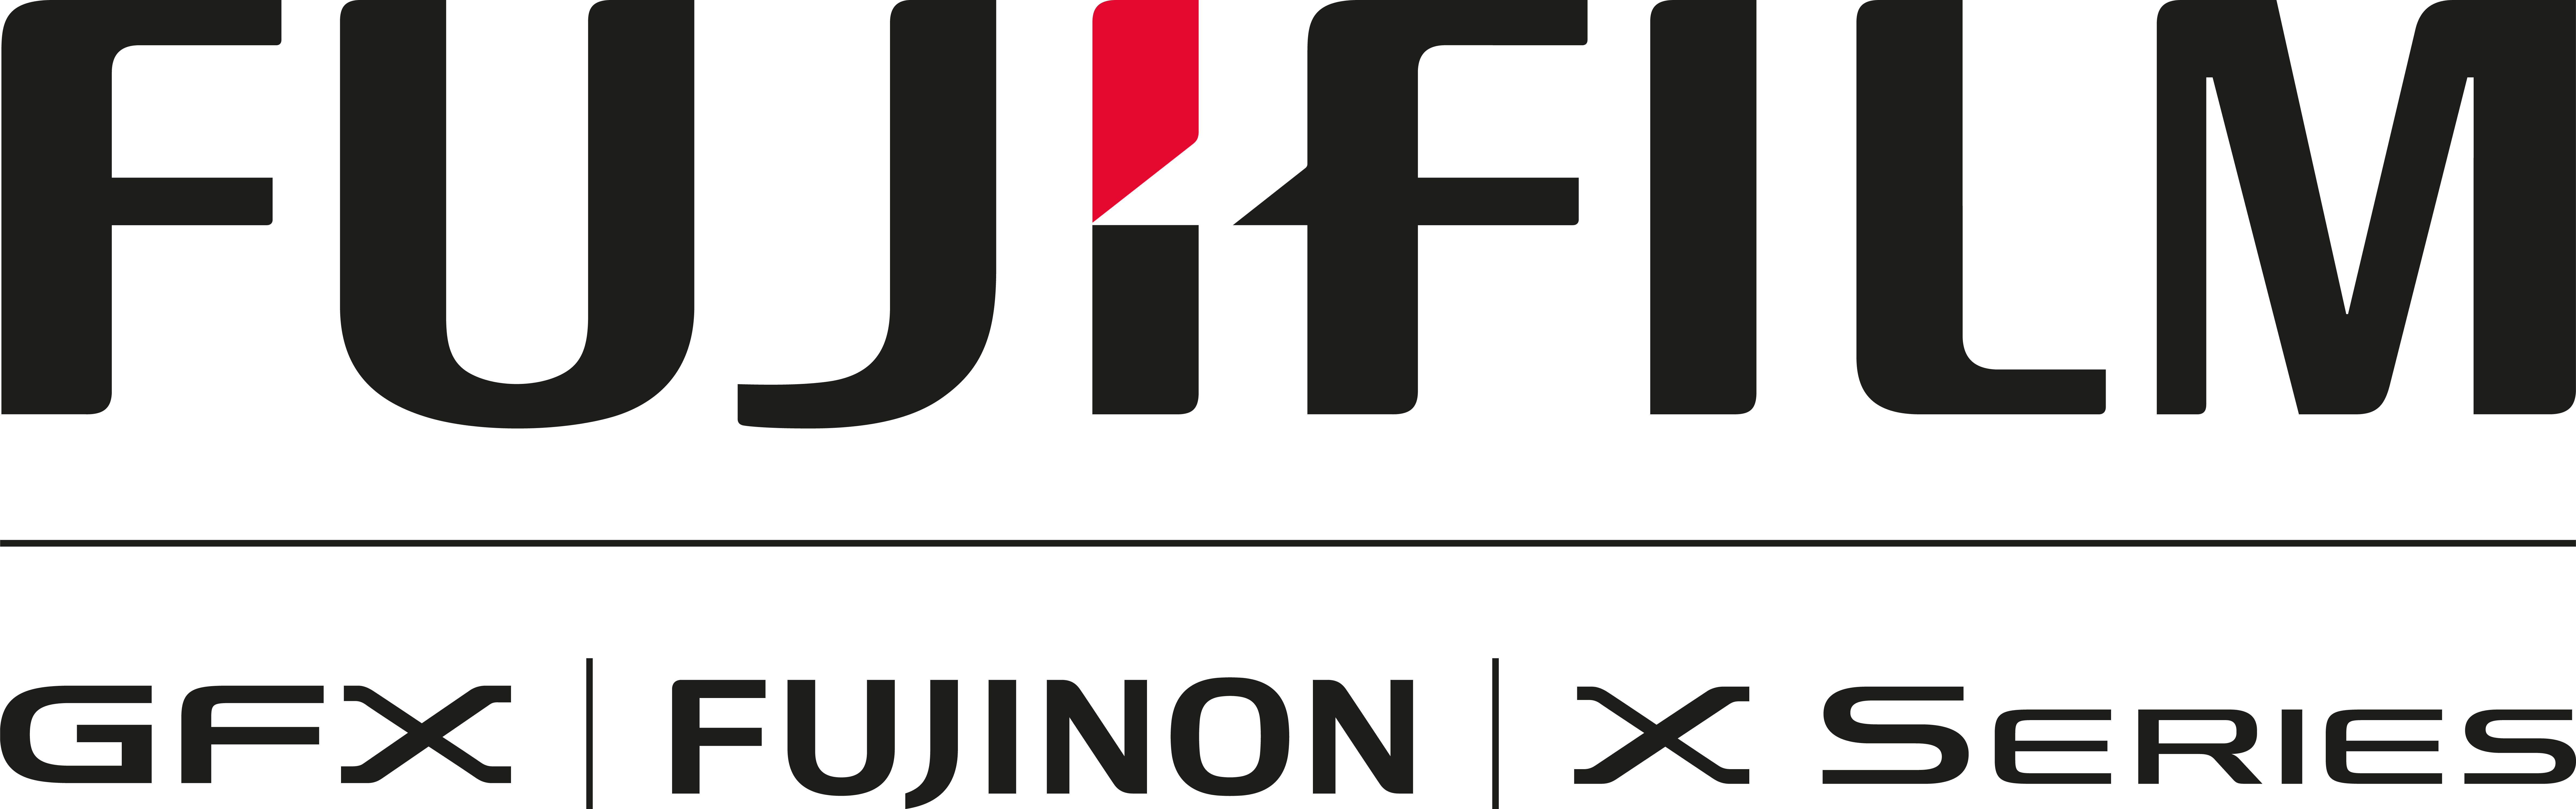 Fujifilm/Fujinon